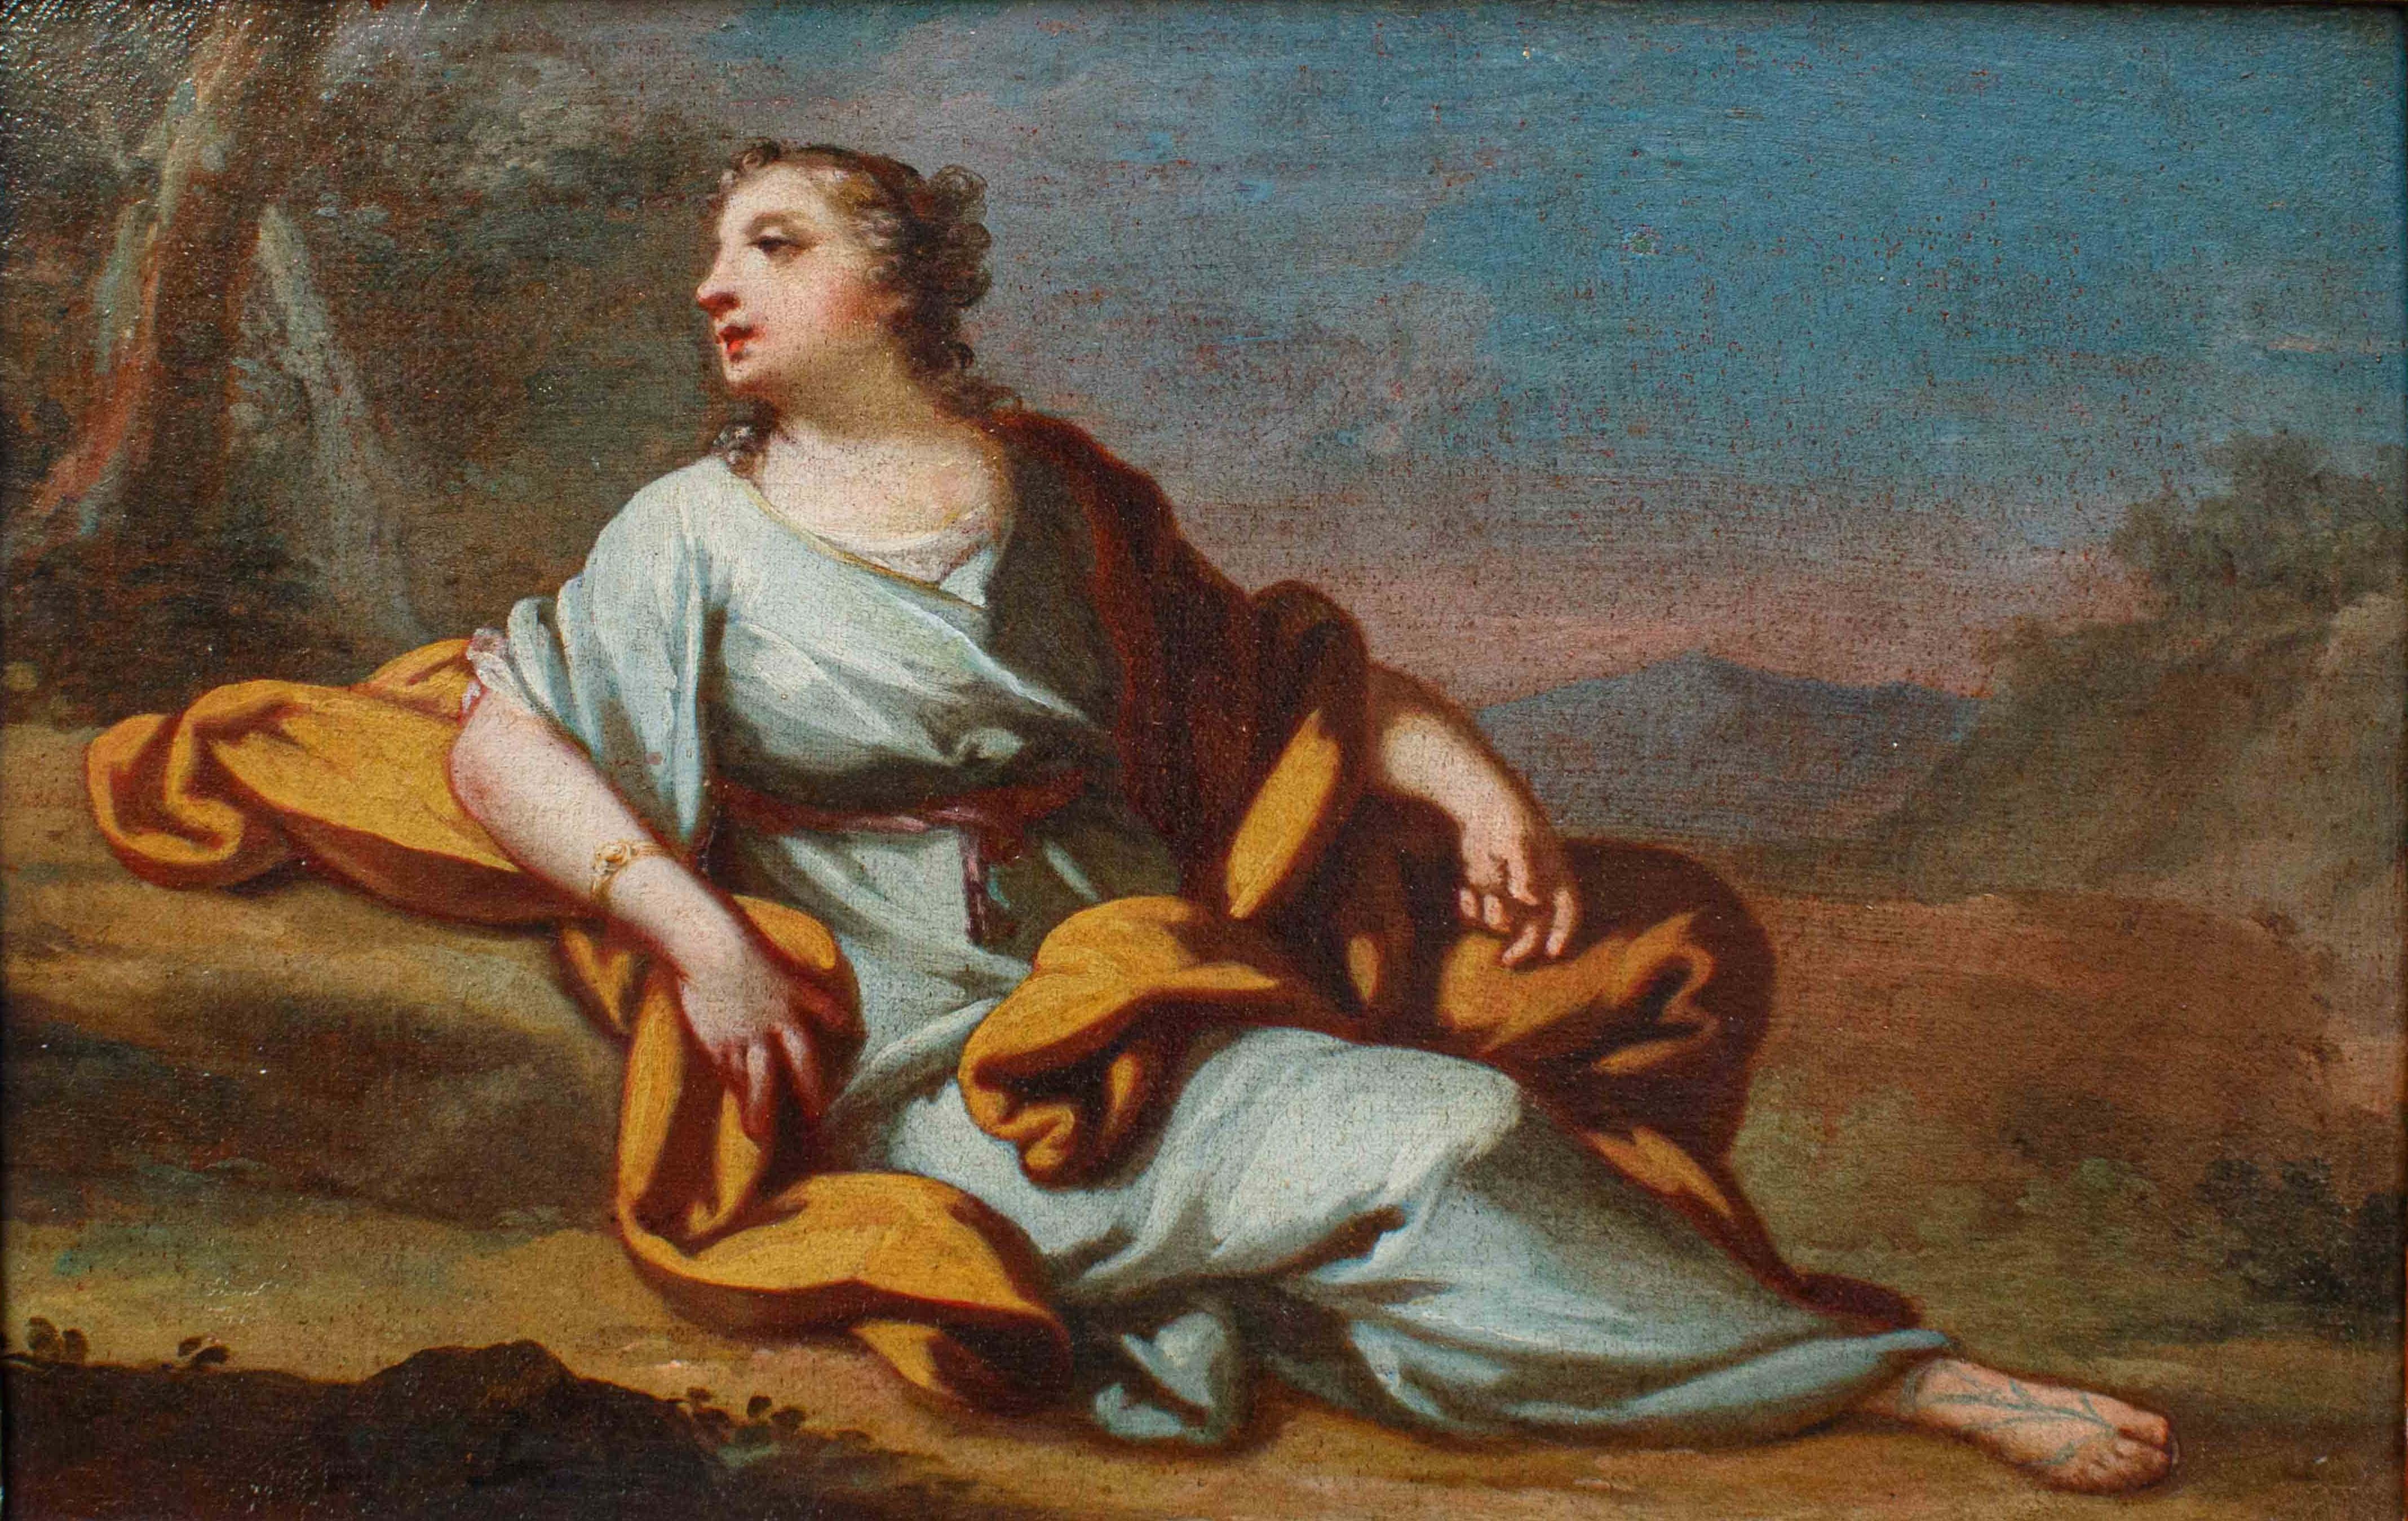 Giovanni Domenico Molinari (Caresana, 1721 - Turin, 1793)

Liegende weibliche Figur

Öl auf Leinwand, cm 46 x. 31 - Mit Rahmen, cm 56 x 42

Das vorliegende Gemälde ist vom Stil und vom behandelten Thema, in diesem Fall ein junges Mädchen, das in